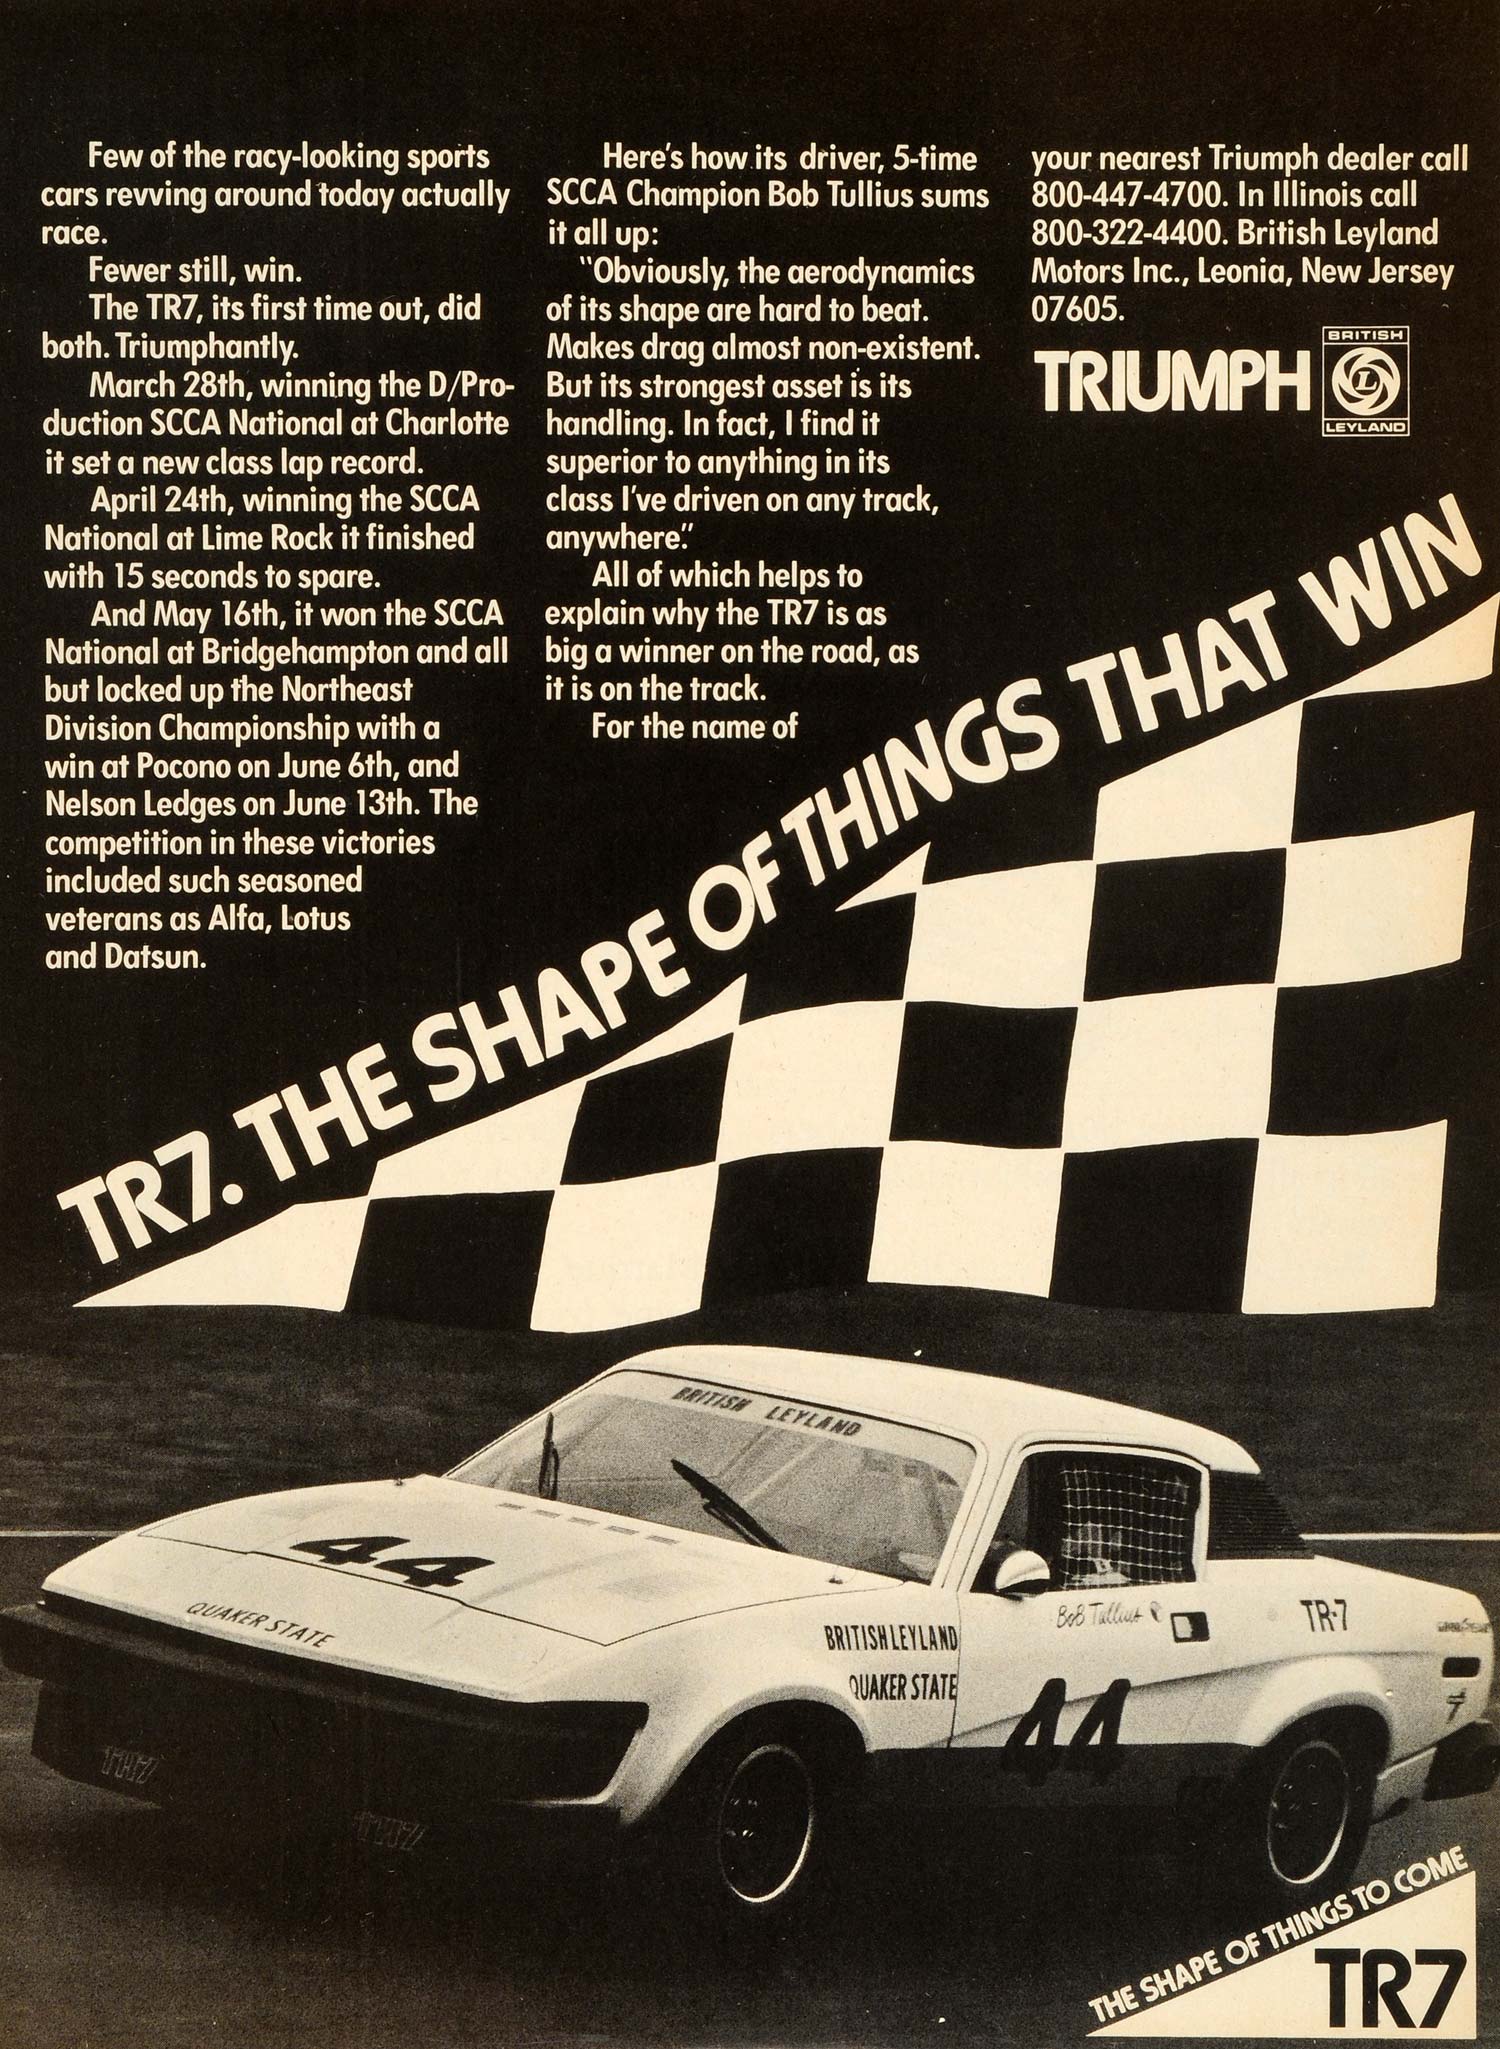 1976 Ad NJ Leoria TR7 Quaker State Triumph Sport Auto British Leyland NYM1